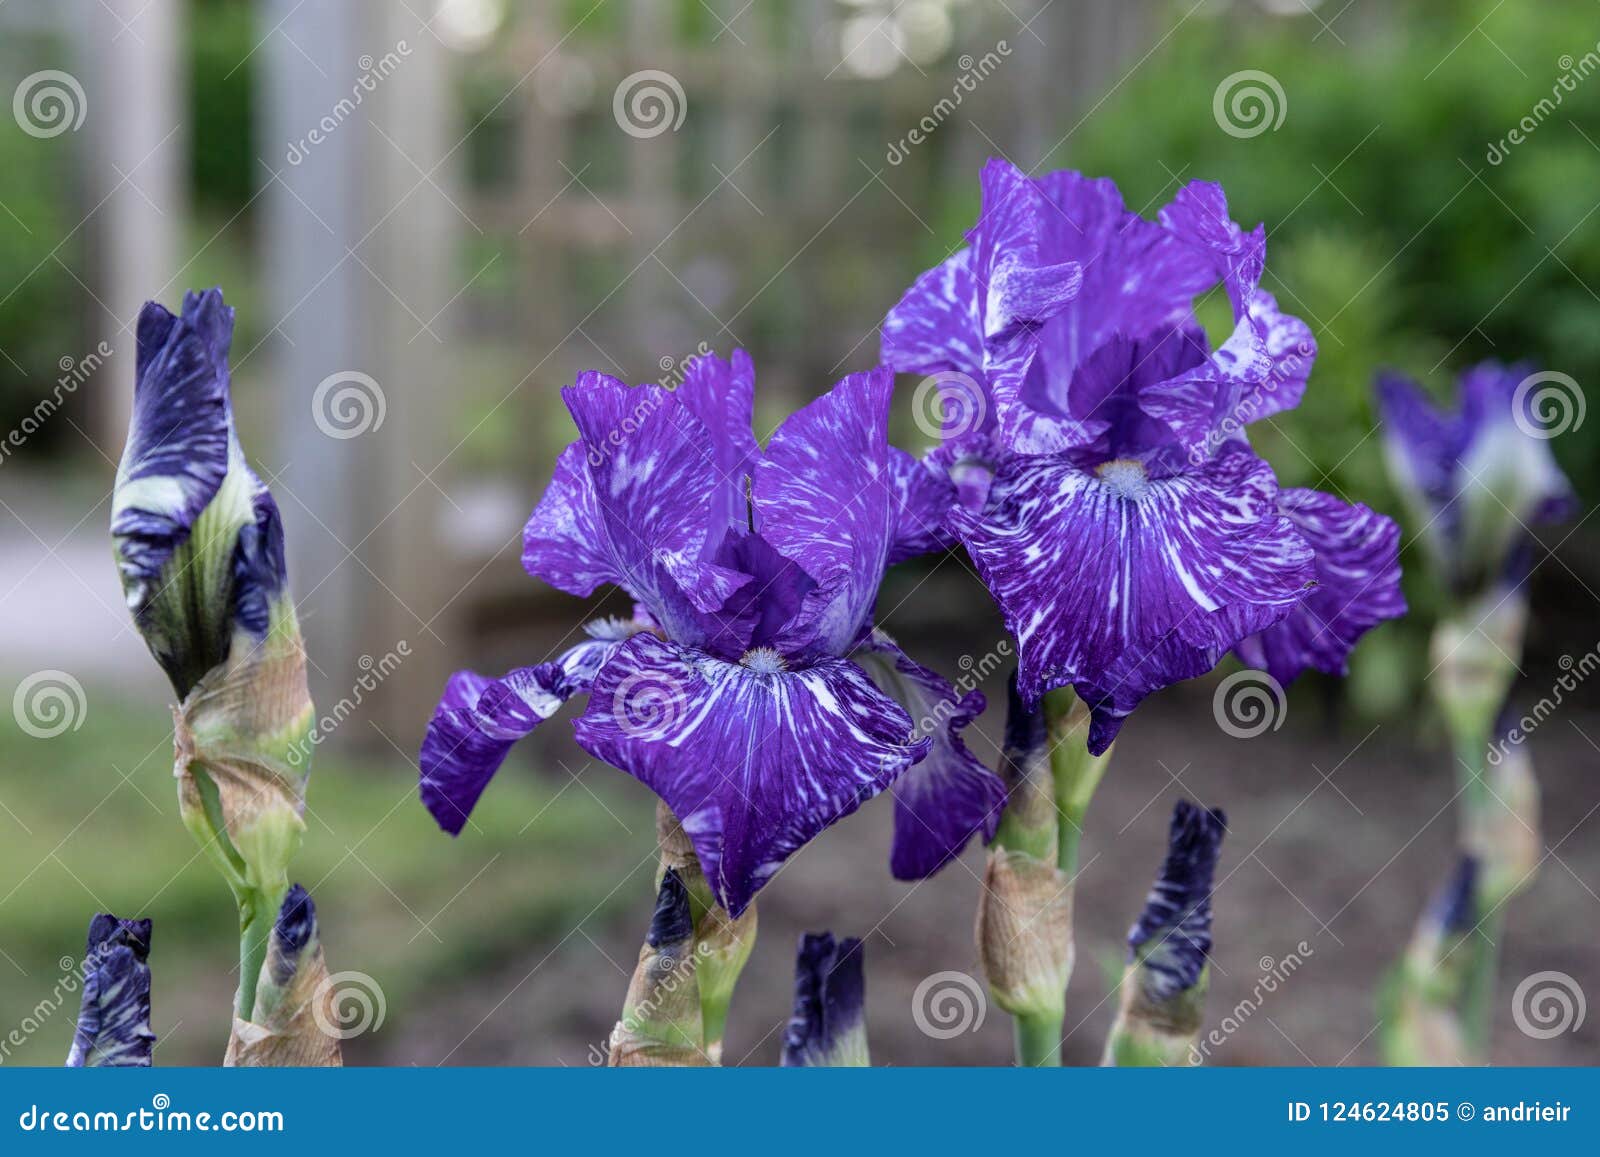 flowers.purple flowers.iris. flowers in garden.